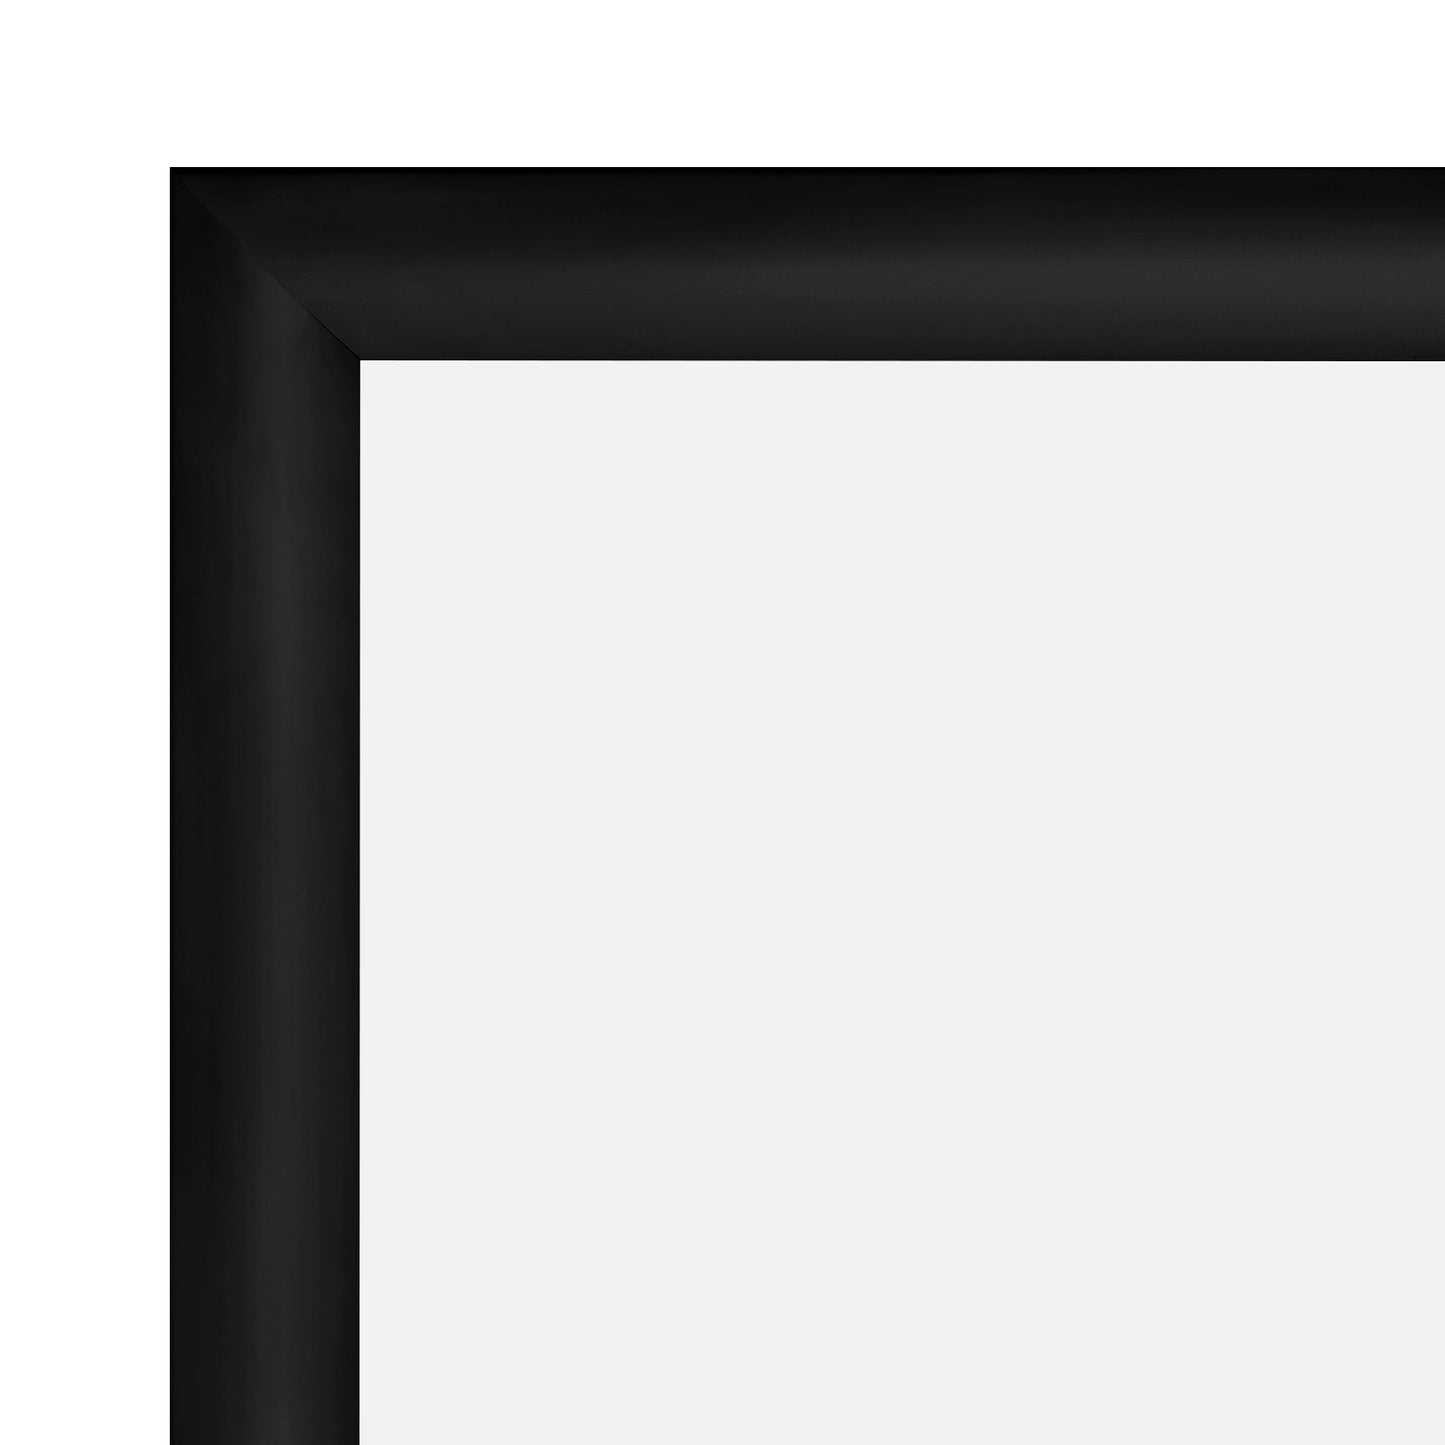 27x40 Black Snap Frame - 1.2" Profile - Snap Frames Direct